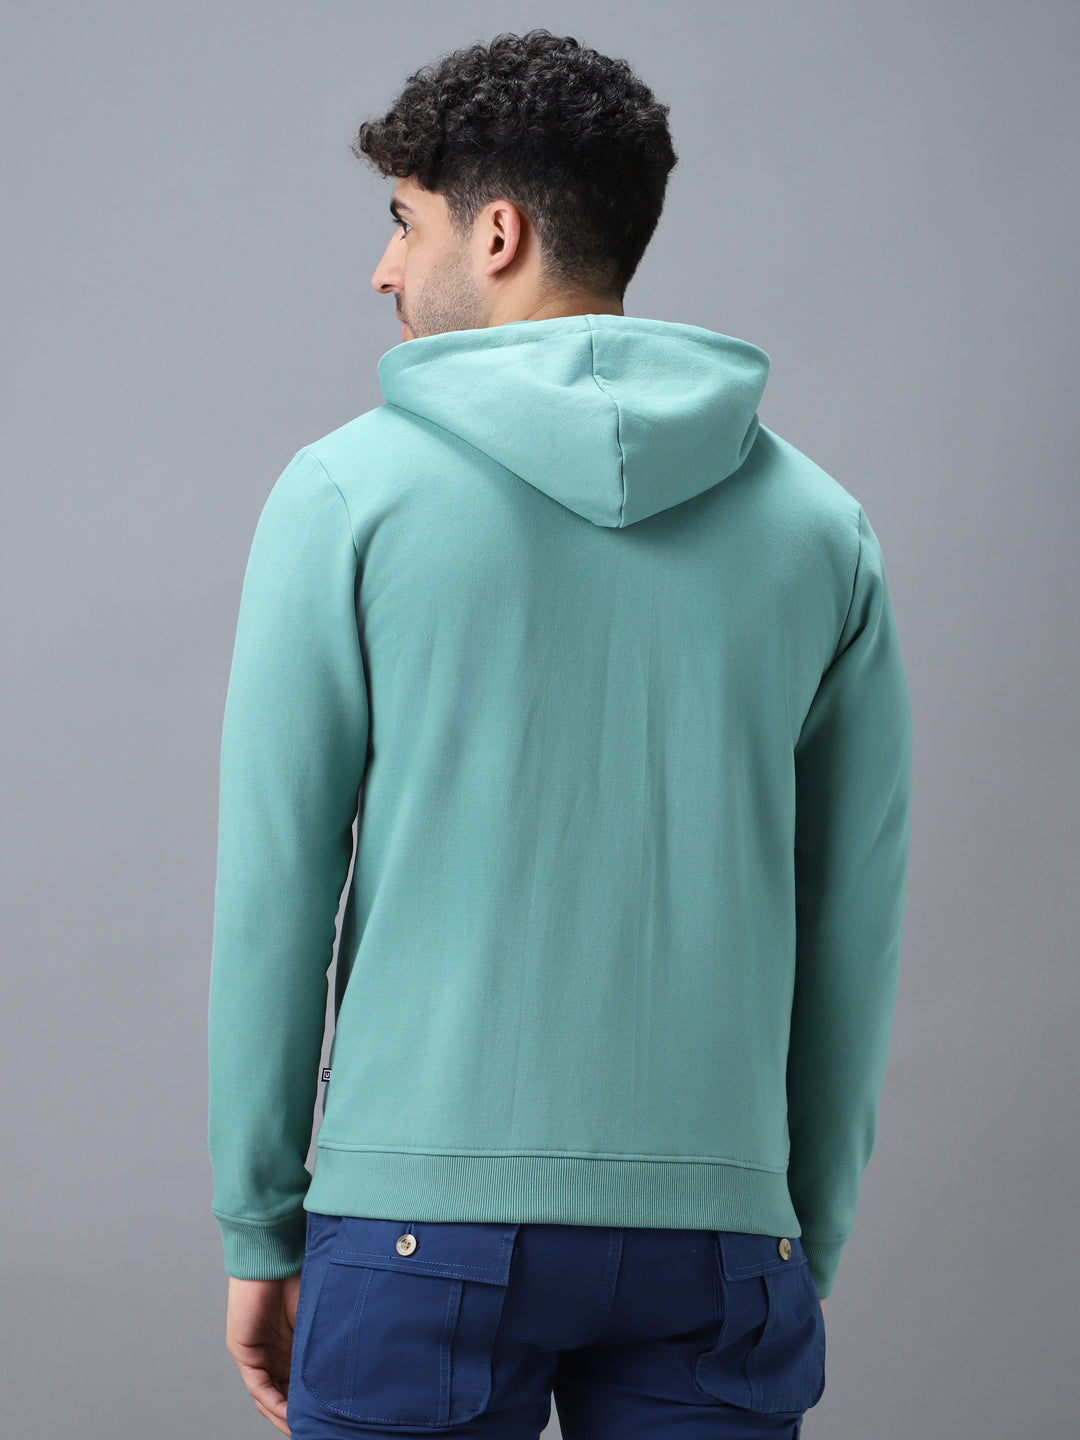 Men's Green Cotton Solid Zippered Hooded Neck Sweatshirt